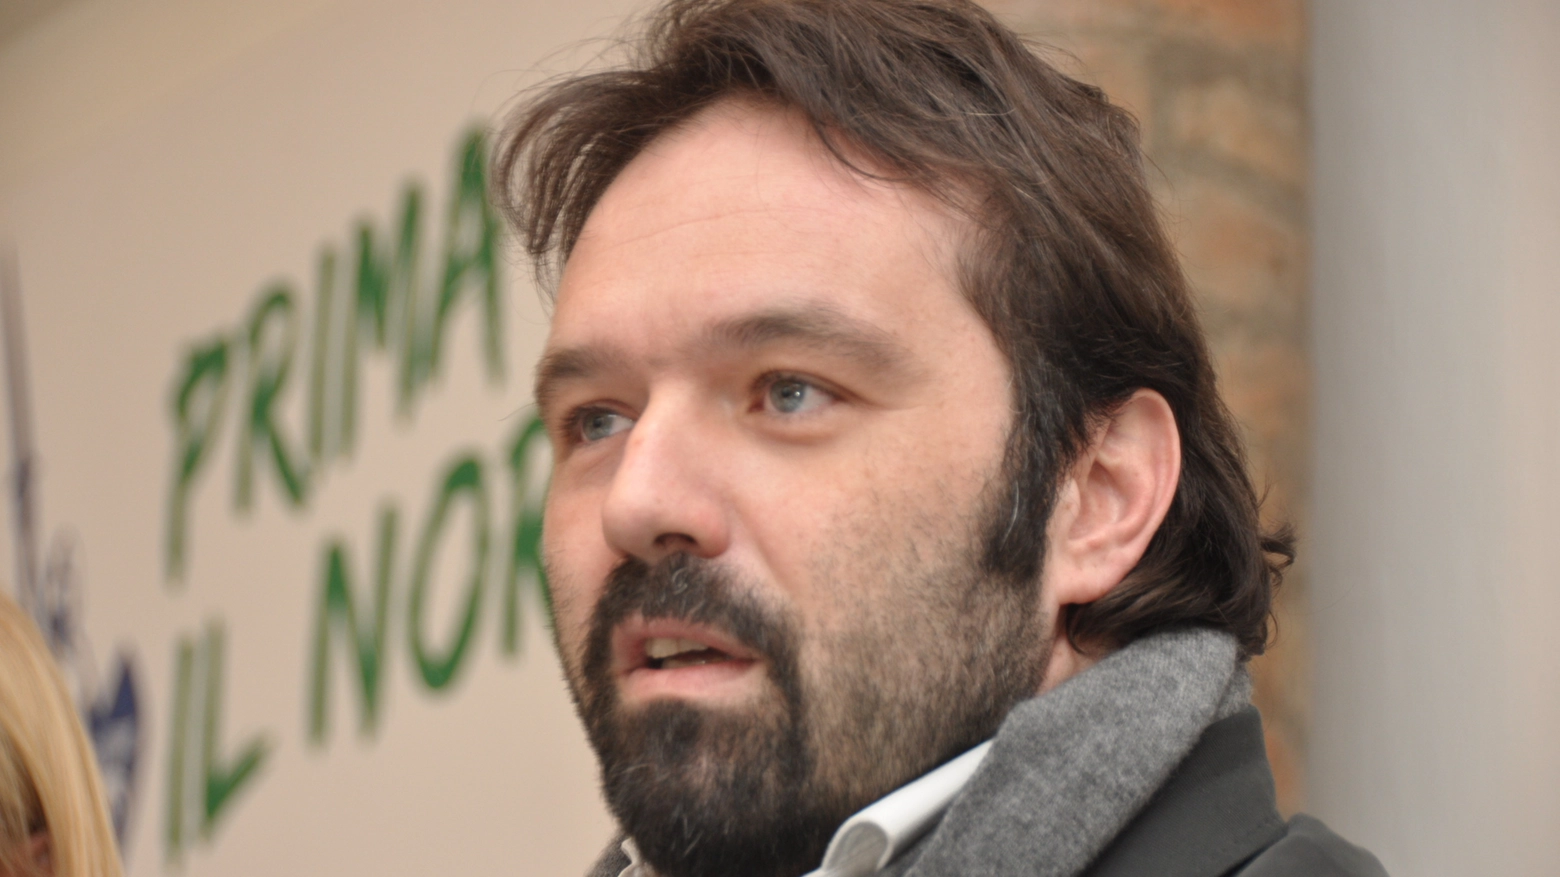 L'ex parlamentare Gianluca Pini era punto di riferimento della Lega di Bossi in Romagna: ora è coinvolto nella maxi inchiesta legata all'emergenza Covid